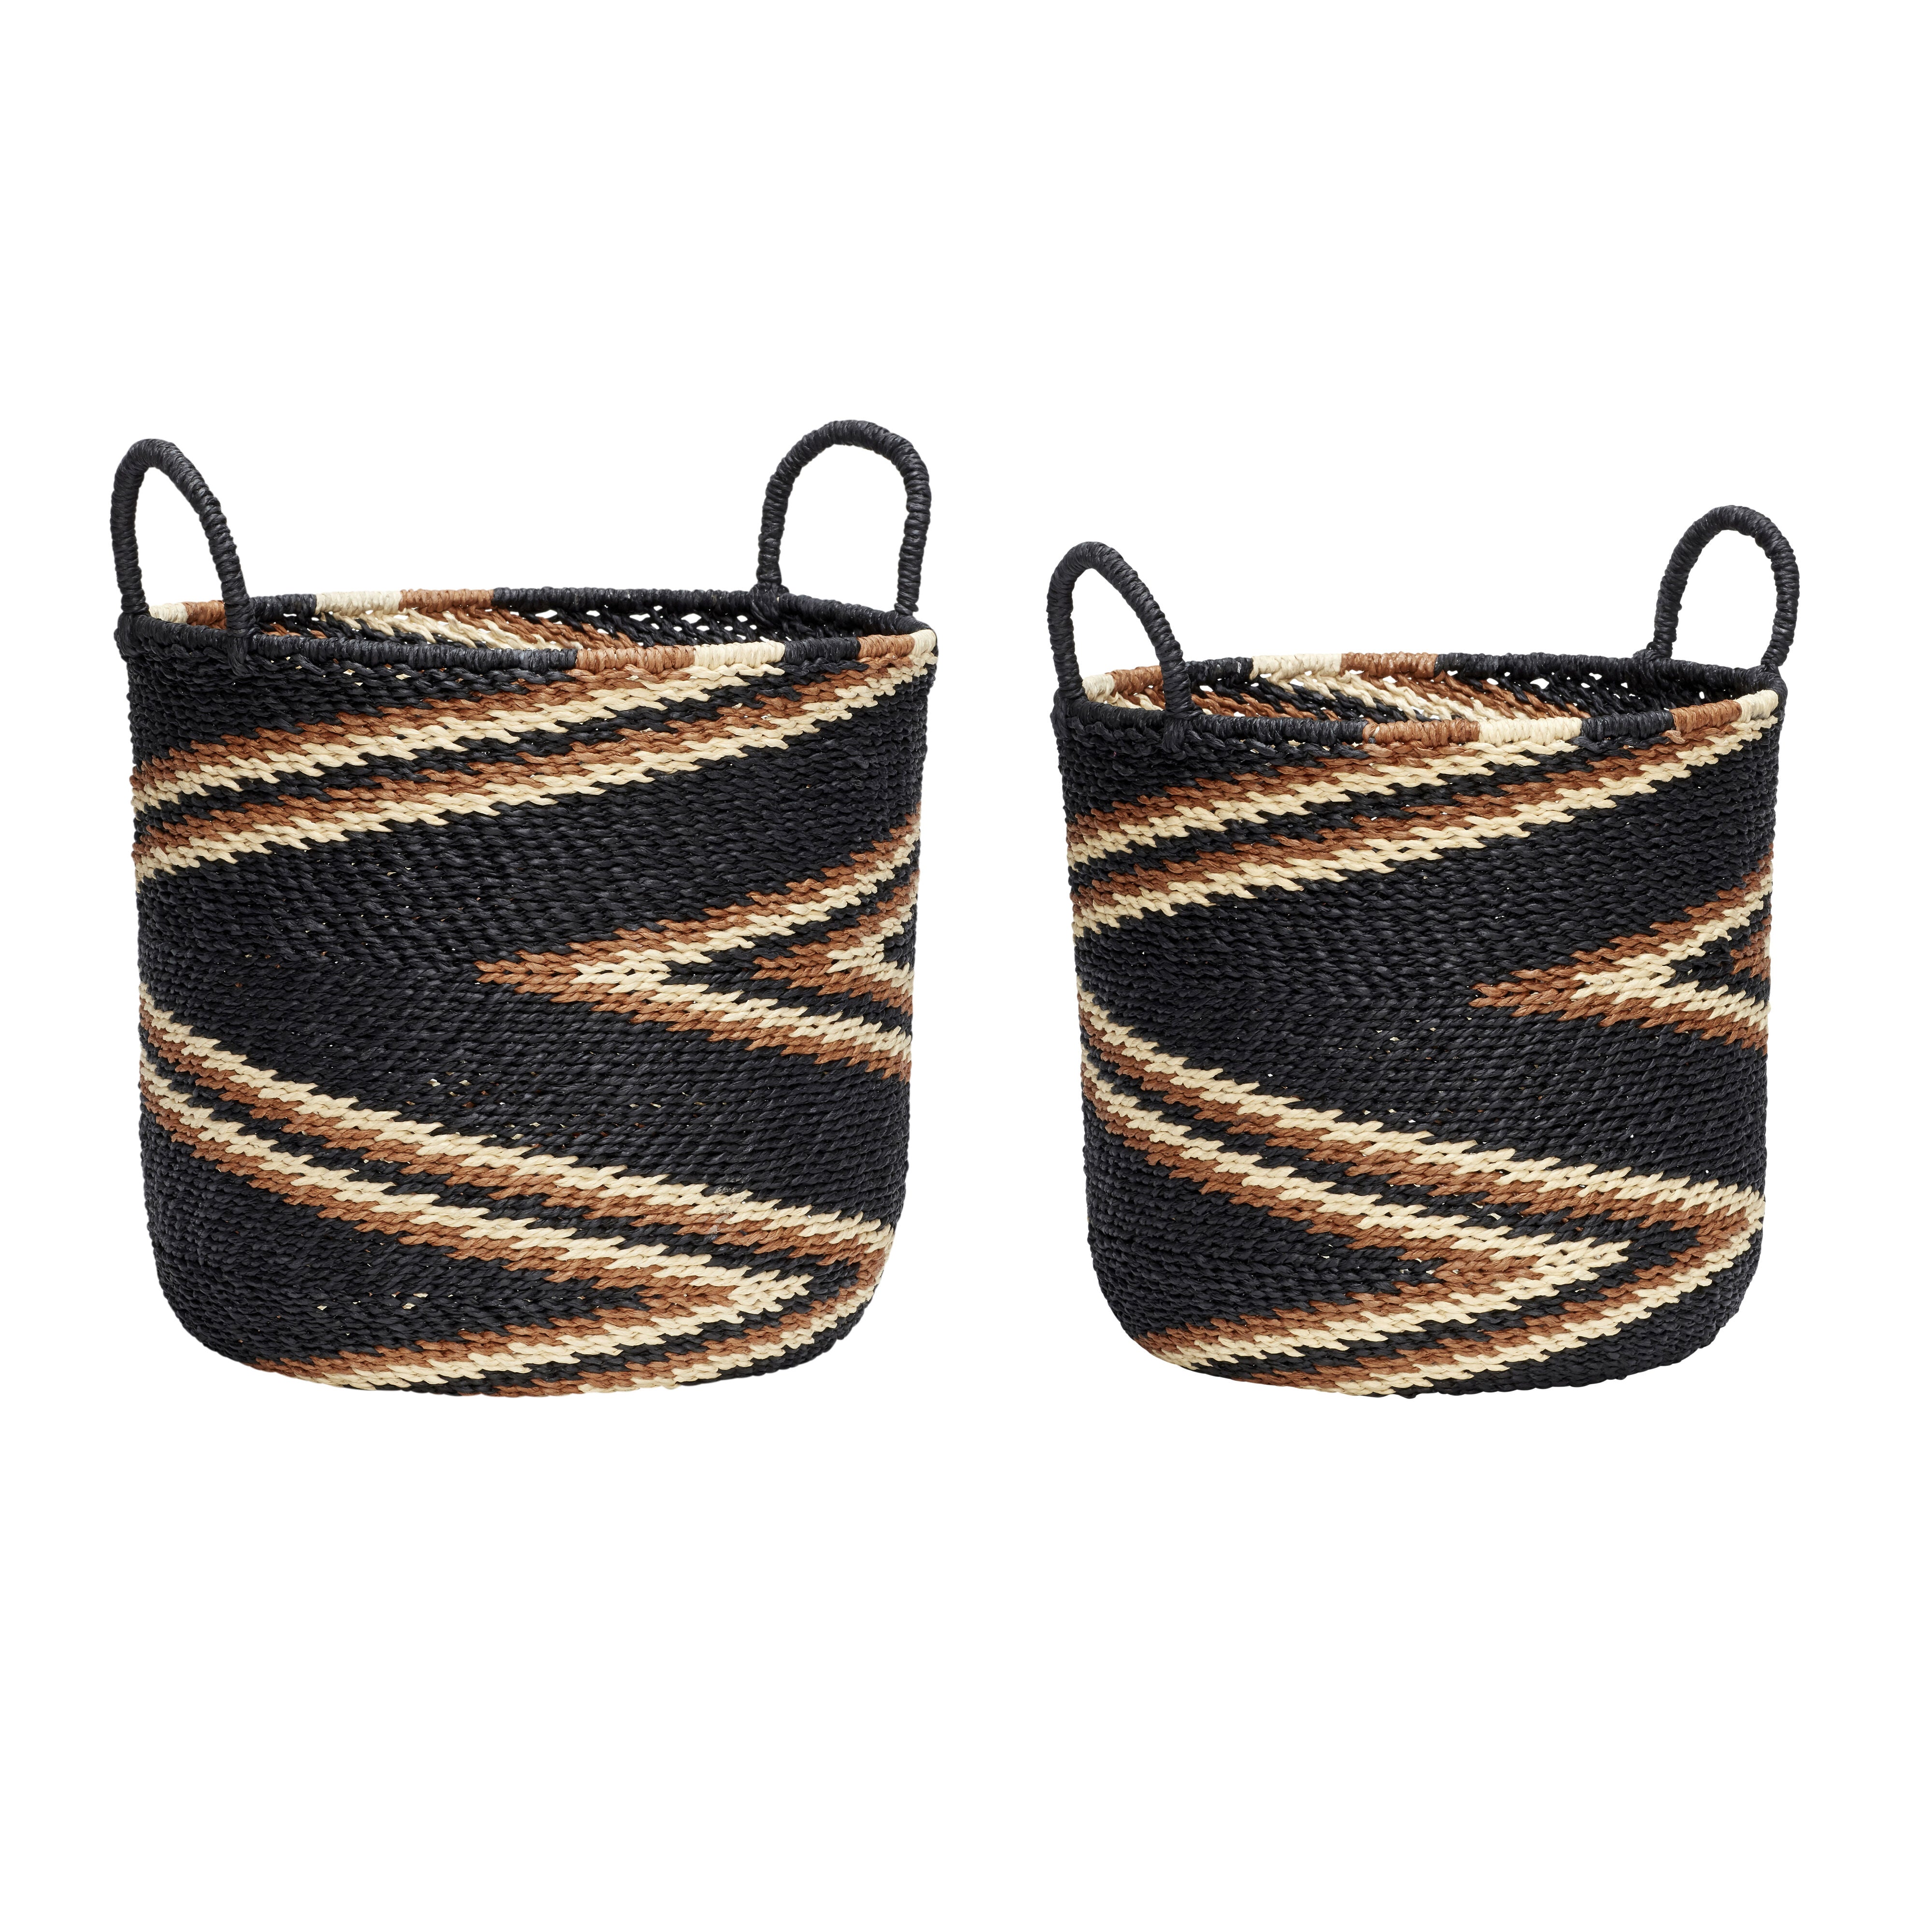 Zigzag Baskets Black/Orange (set of 2)